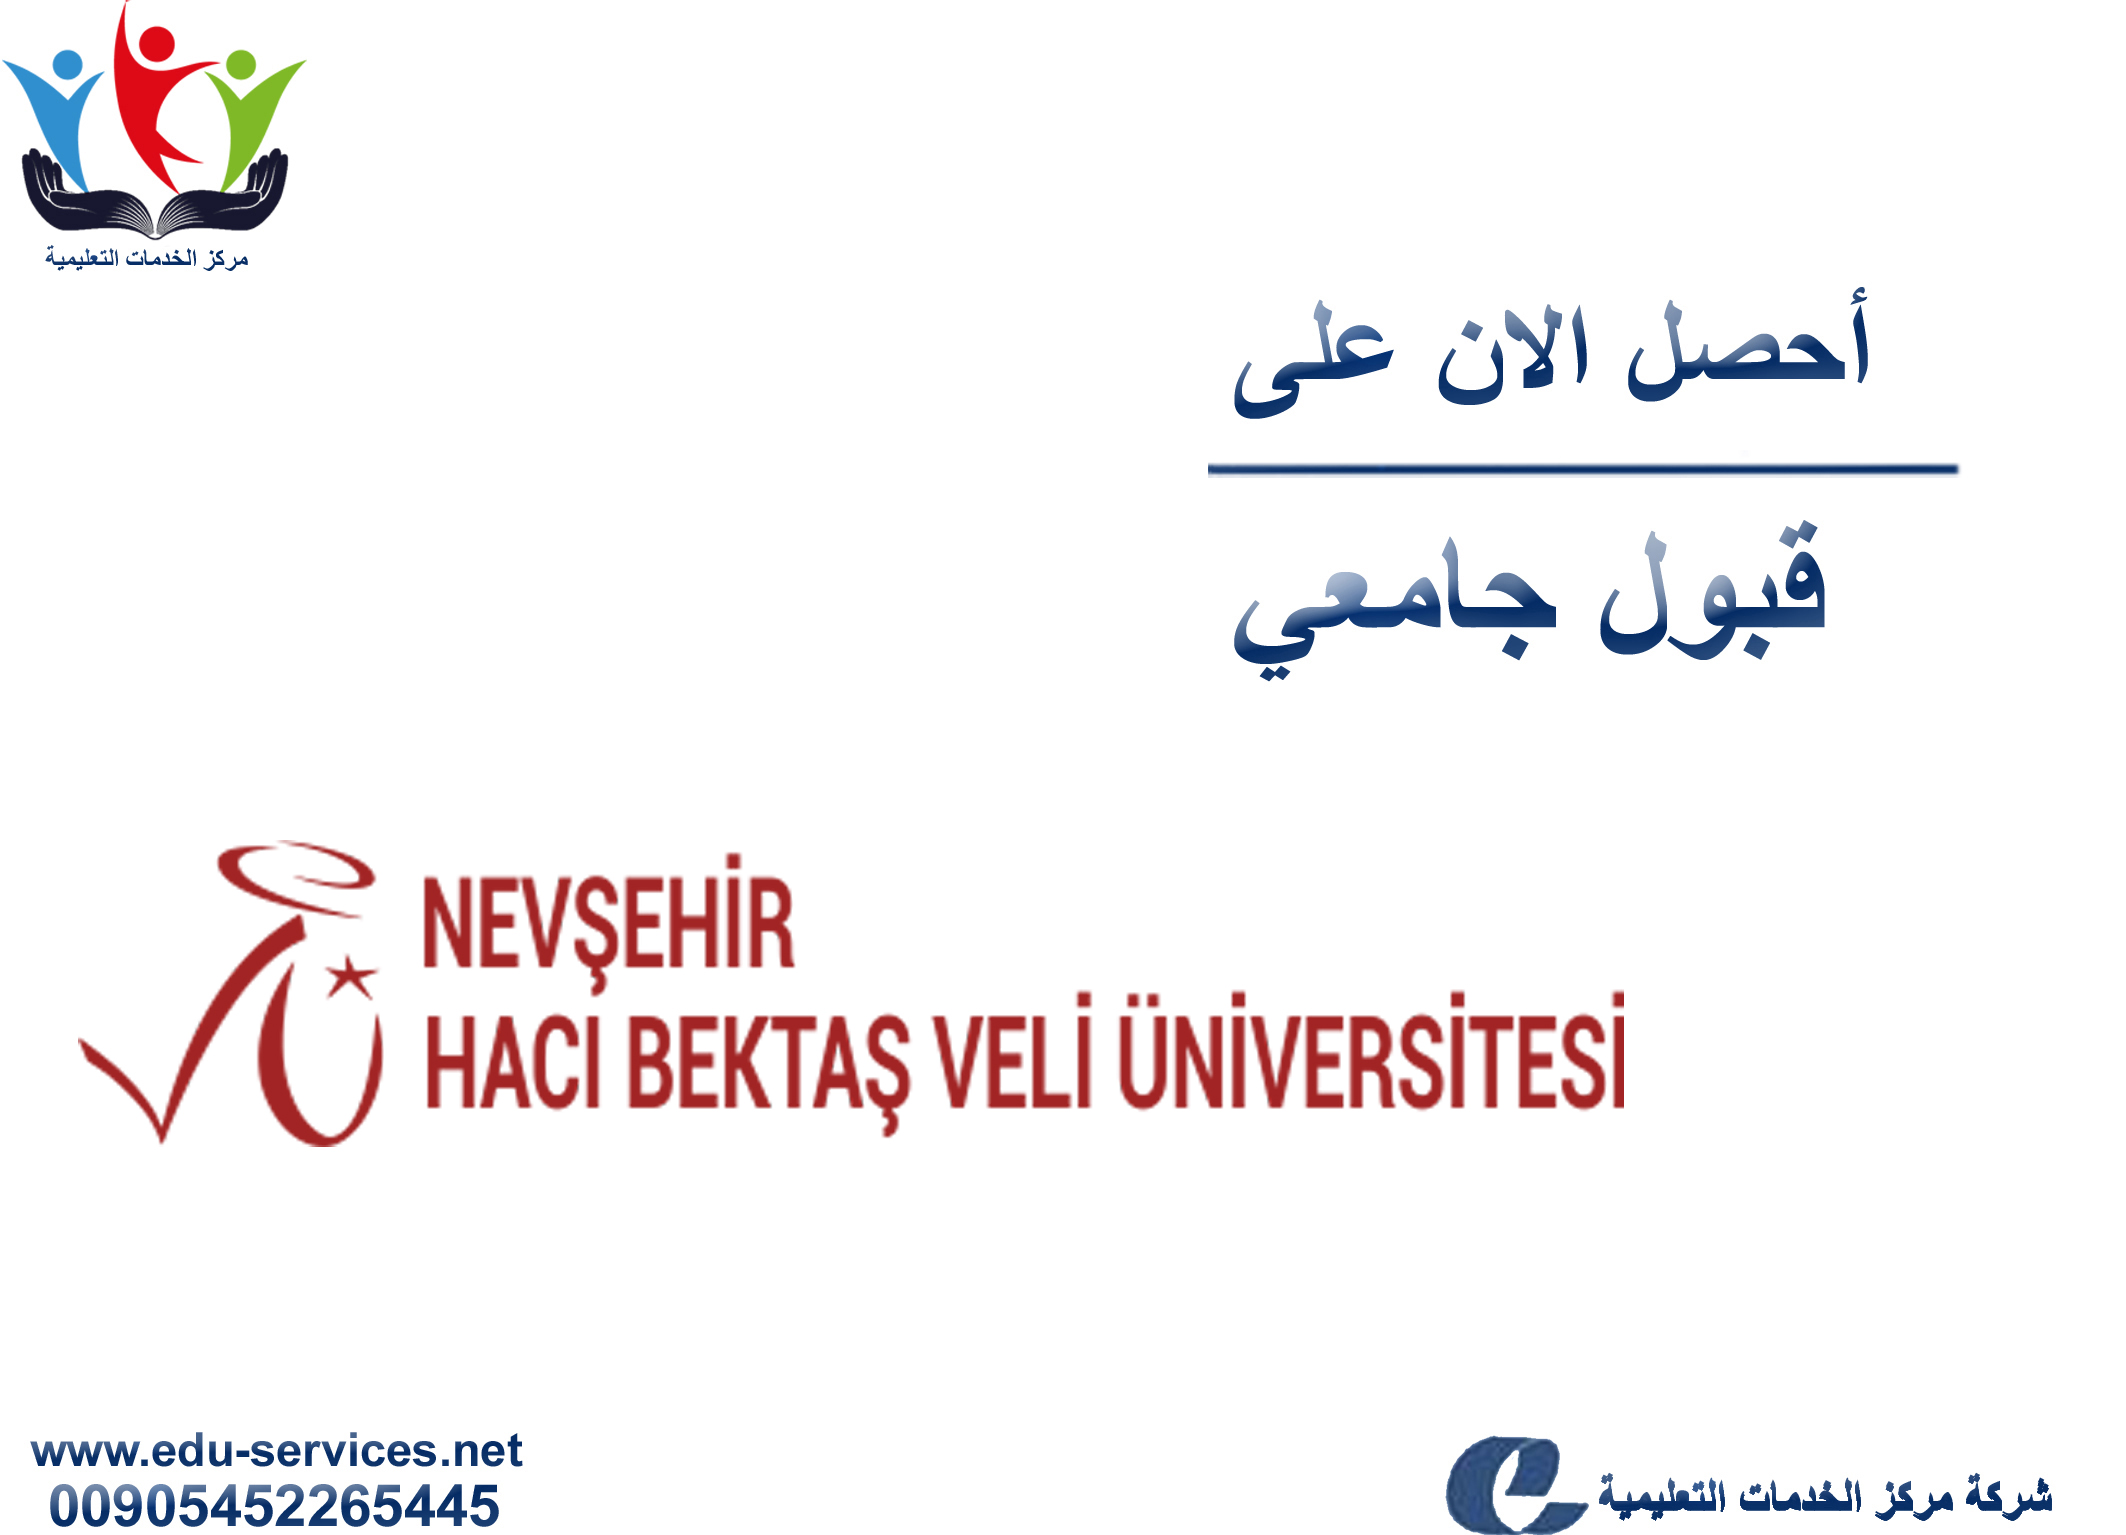 افتتاح التسجيل على جامعة نيف شهير حجي بكتاش ولي لبرنامج الدراسات العليا للعام 2019-2020